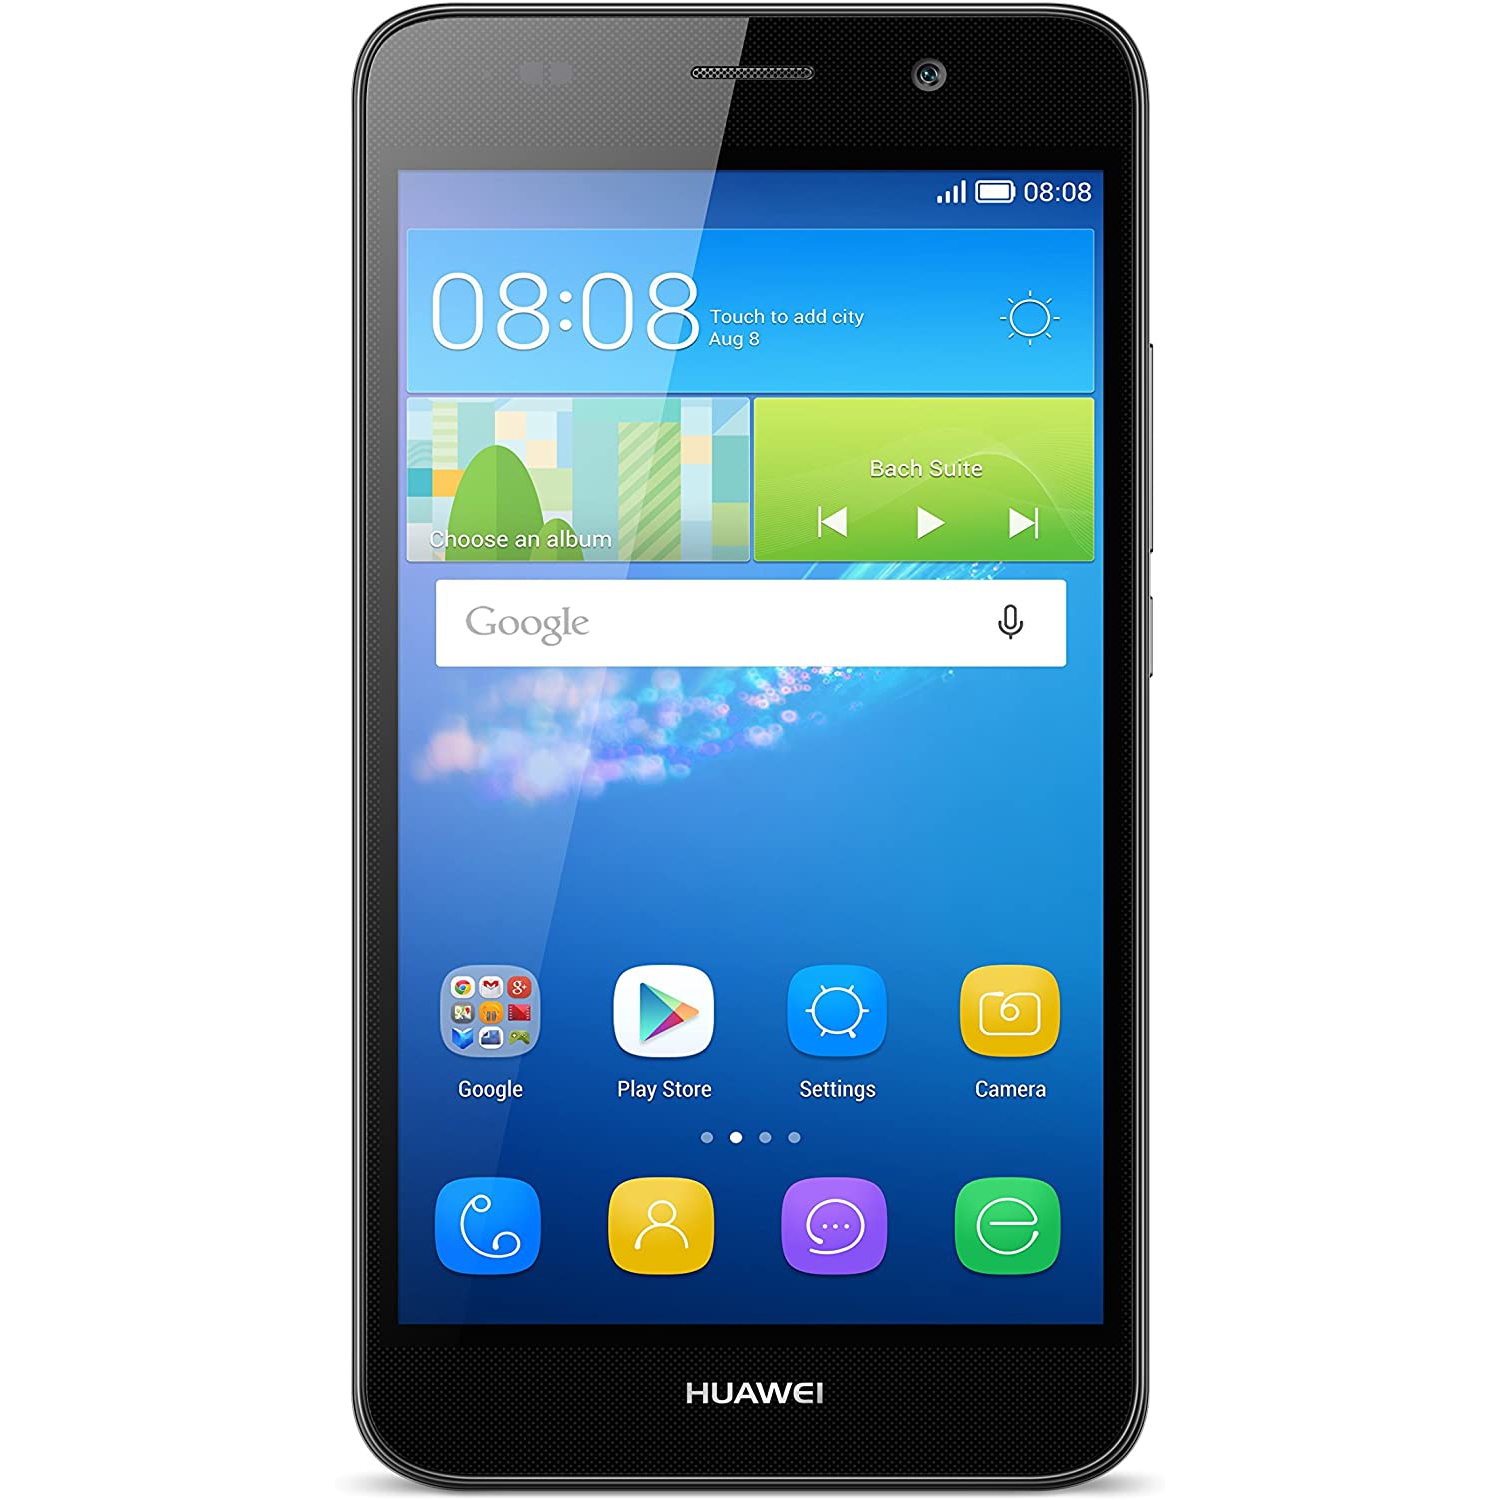 Refurbished (Good) - Huawei Y6 8GB - Factory Unlocked Smartphone - Black